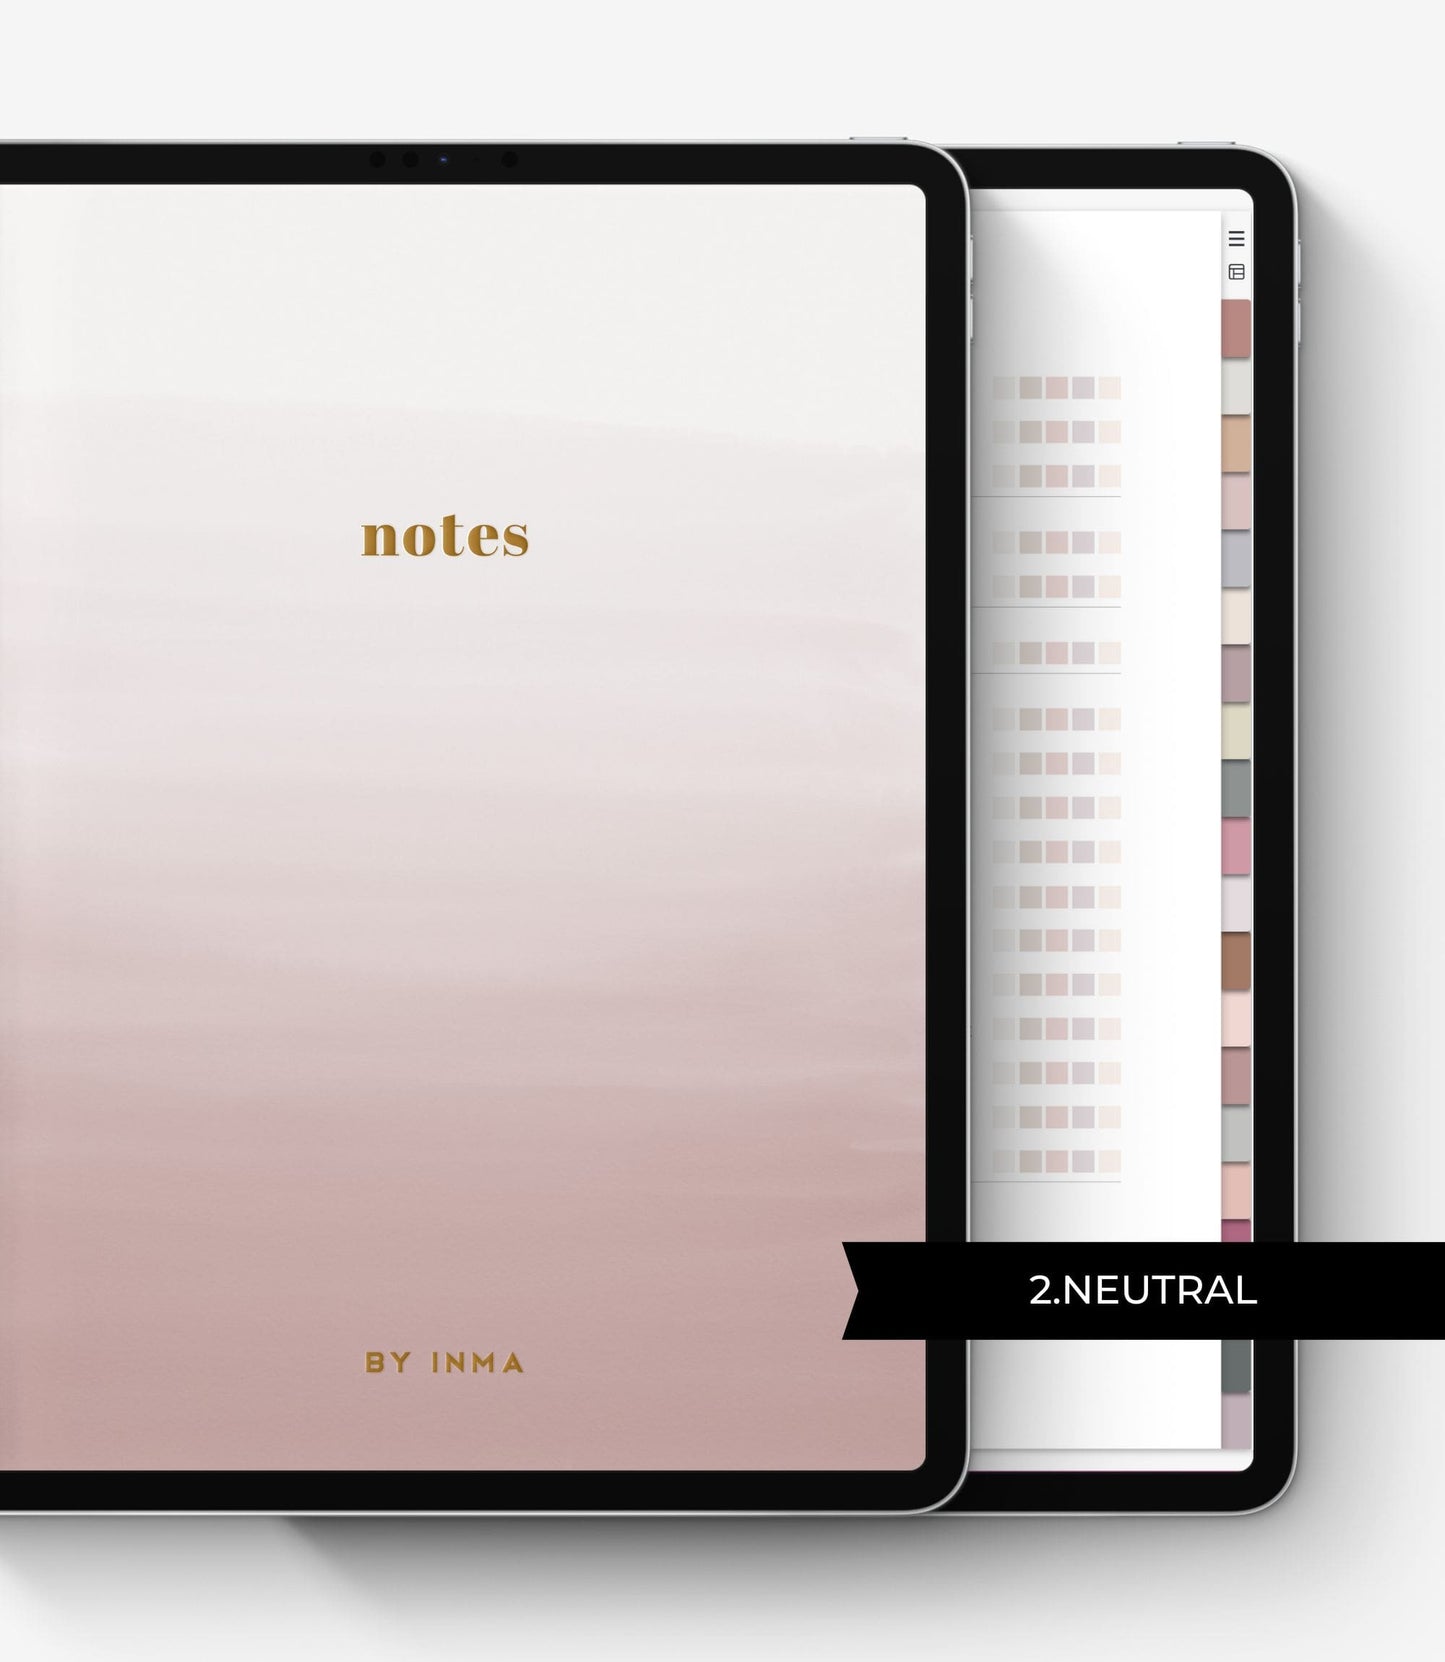 Cuaderno digital para notas de reuniones en el iPad - BY INMA – By